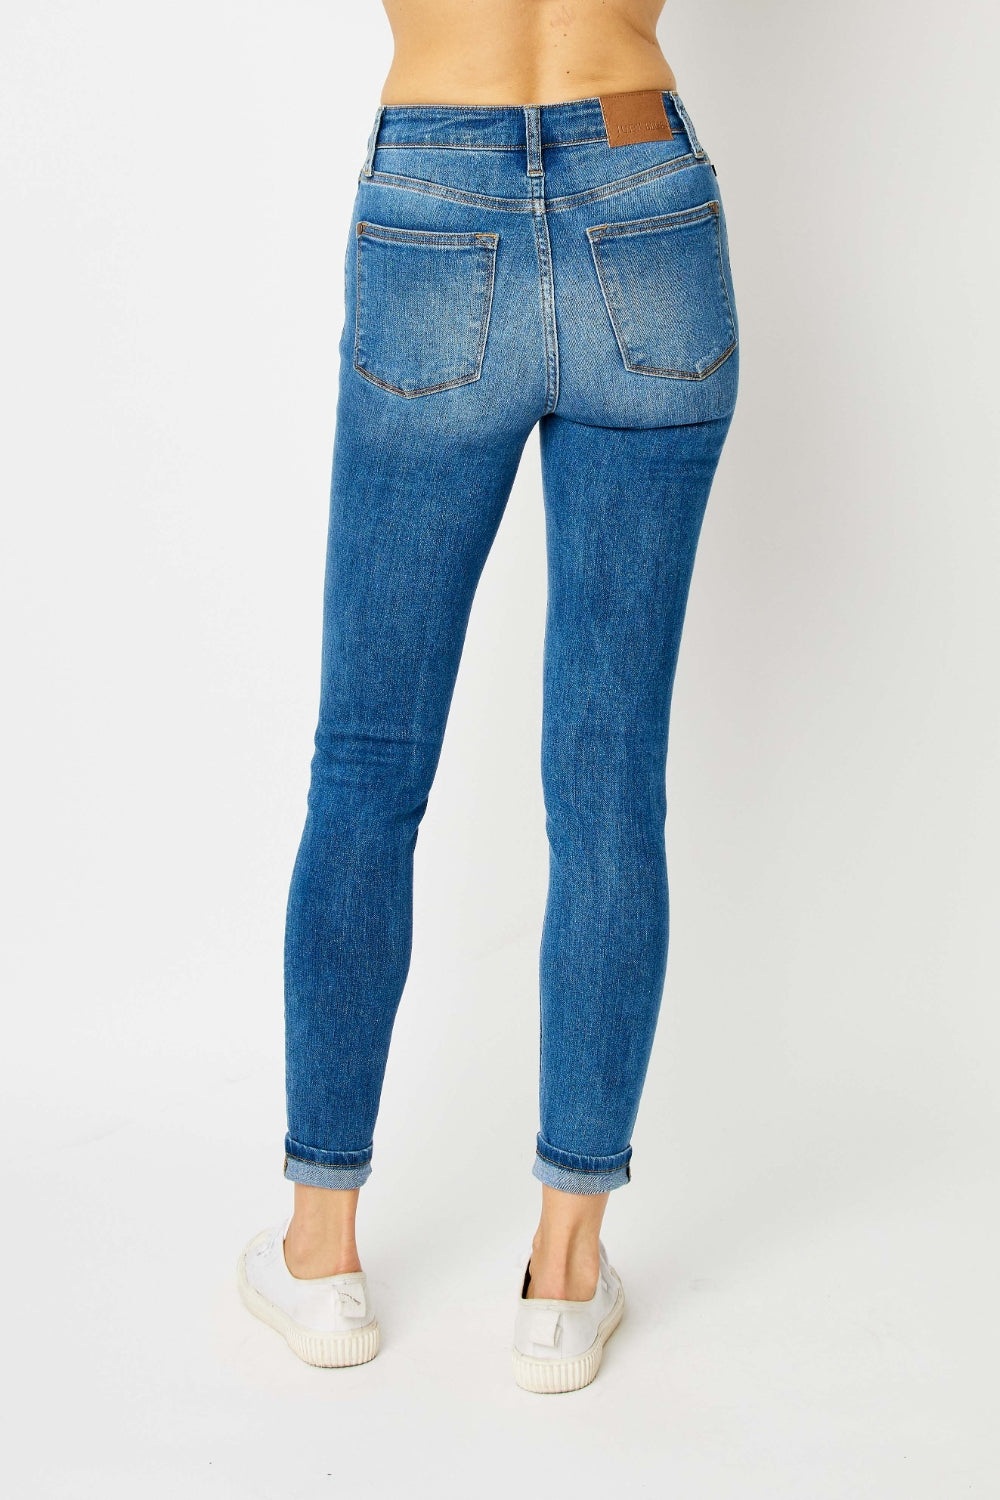 Back View, Judy Blue, Classic Cuffed Hem Skinny Jeans